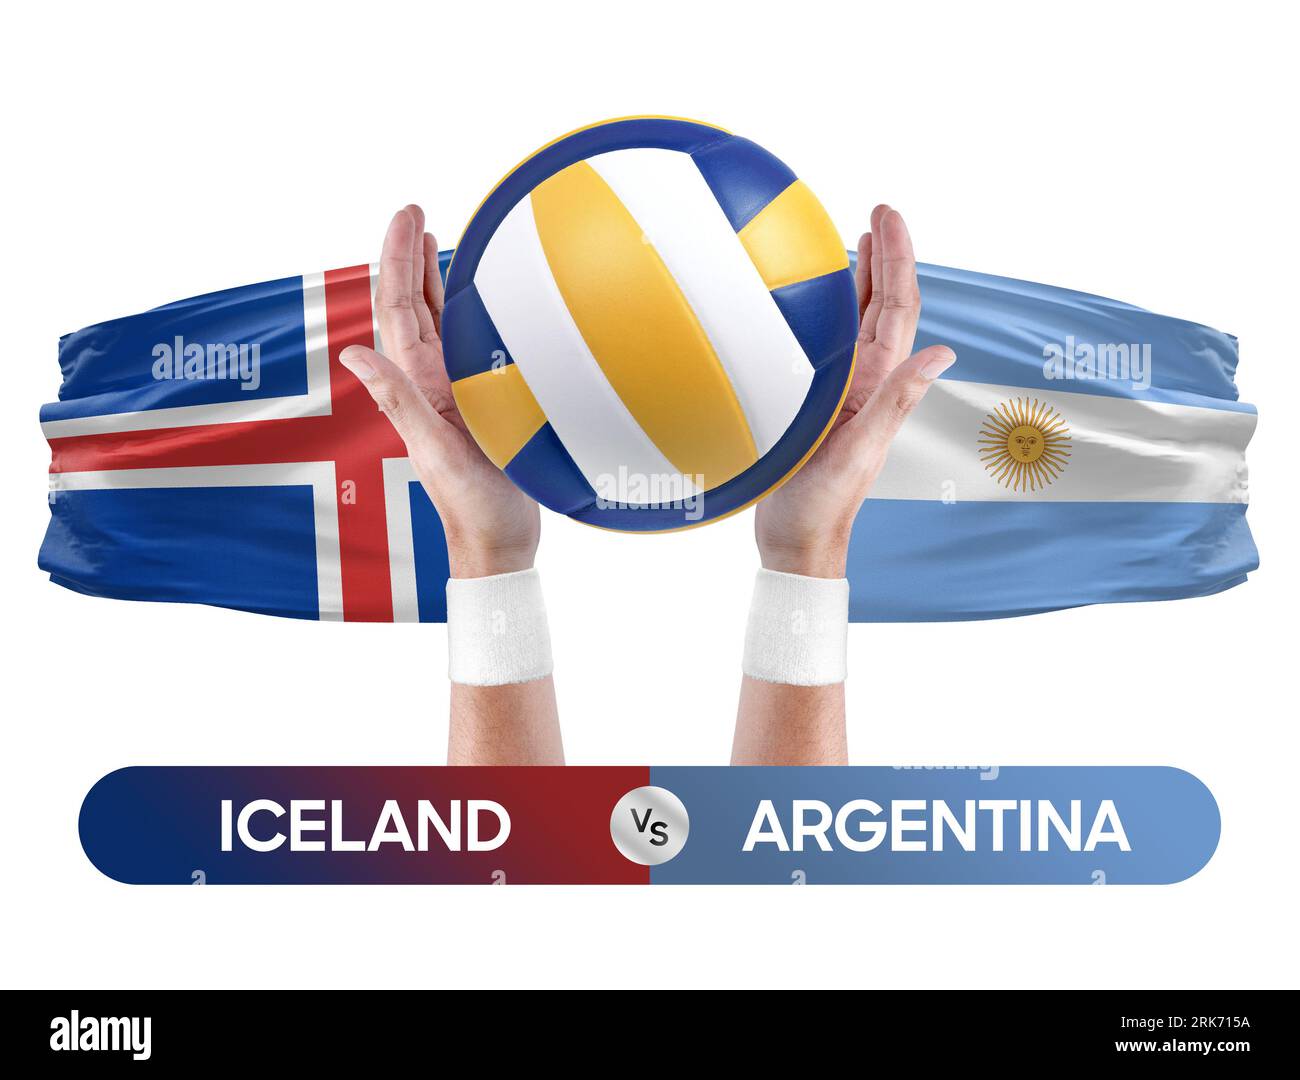 Island gegen Argentinien Nationalmannschaften Volleyball Volleyball Volleyball Match Competition Concept. Stockfoto